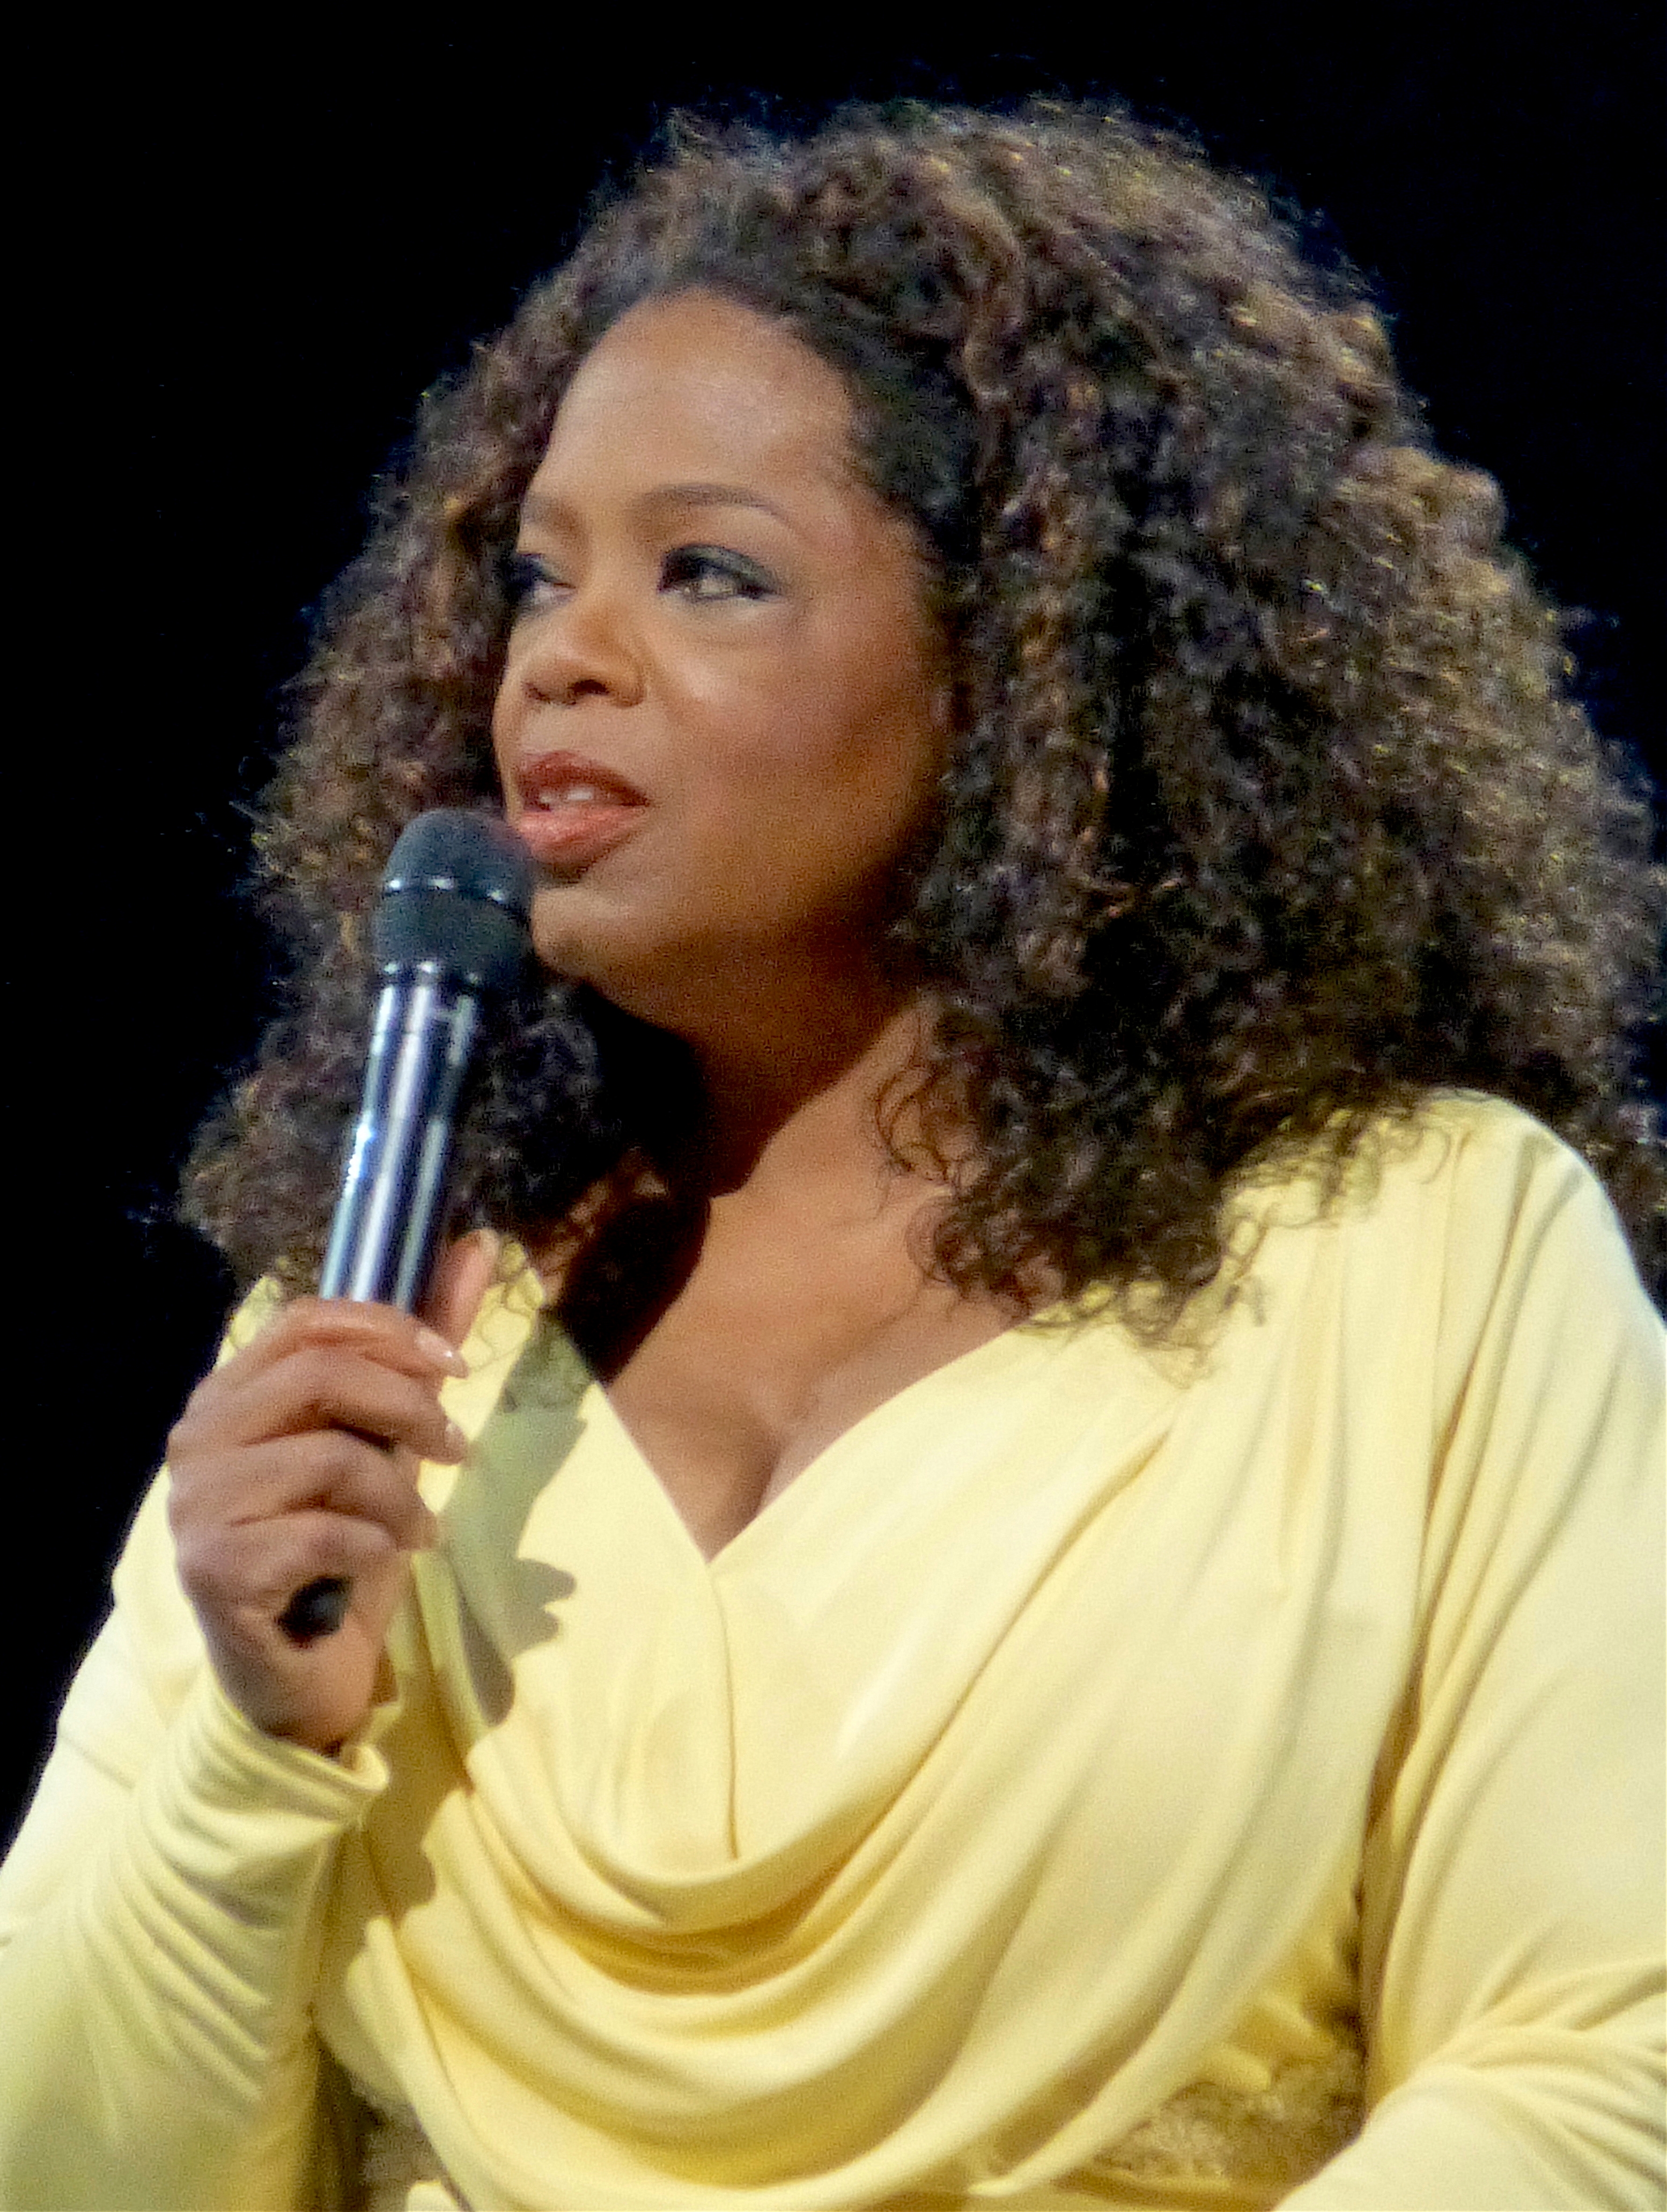 auteur Oprah Winfrey de la citation Être humain signifie que vous ferez des erreurs. Et vous ferez des erreurs, parce que l'échec est la manière de Dieu de vous faire avancer dans une autre direction.